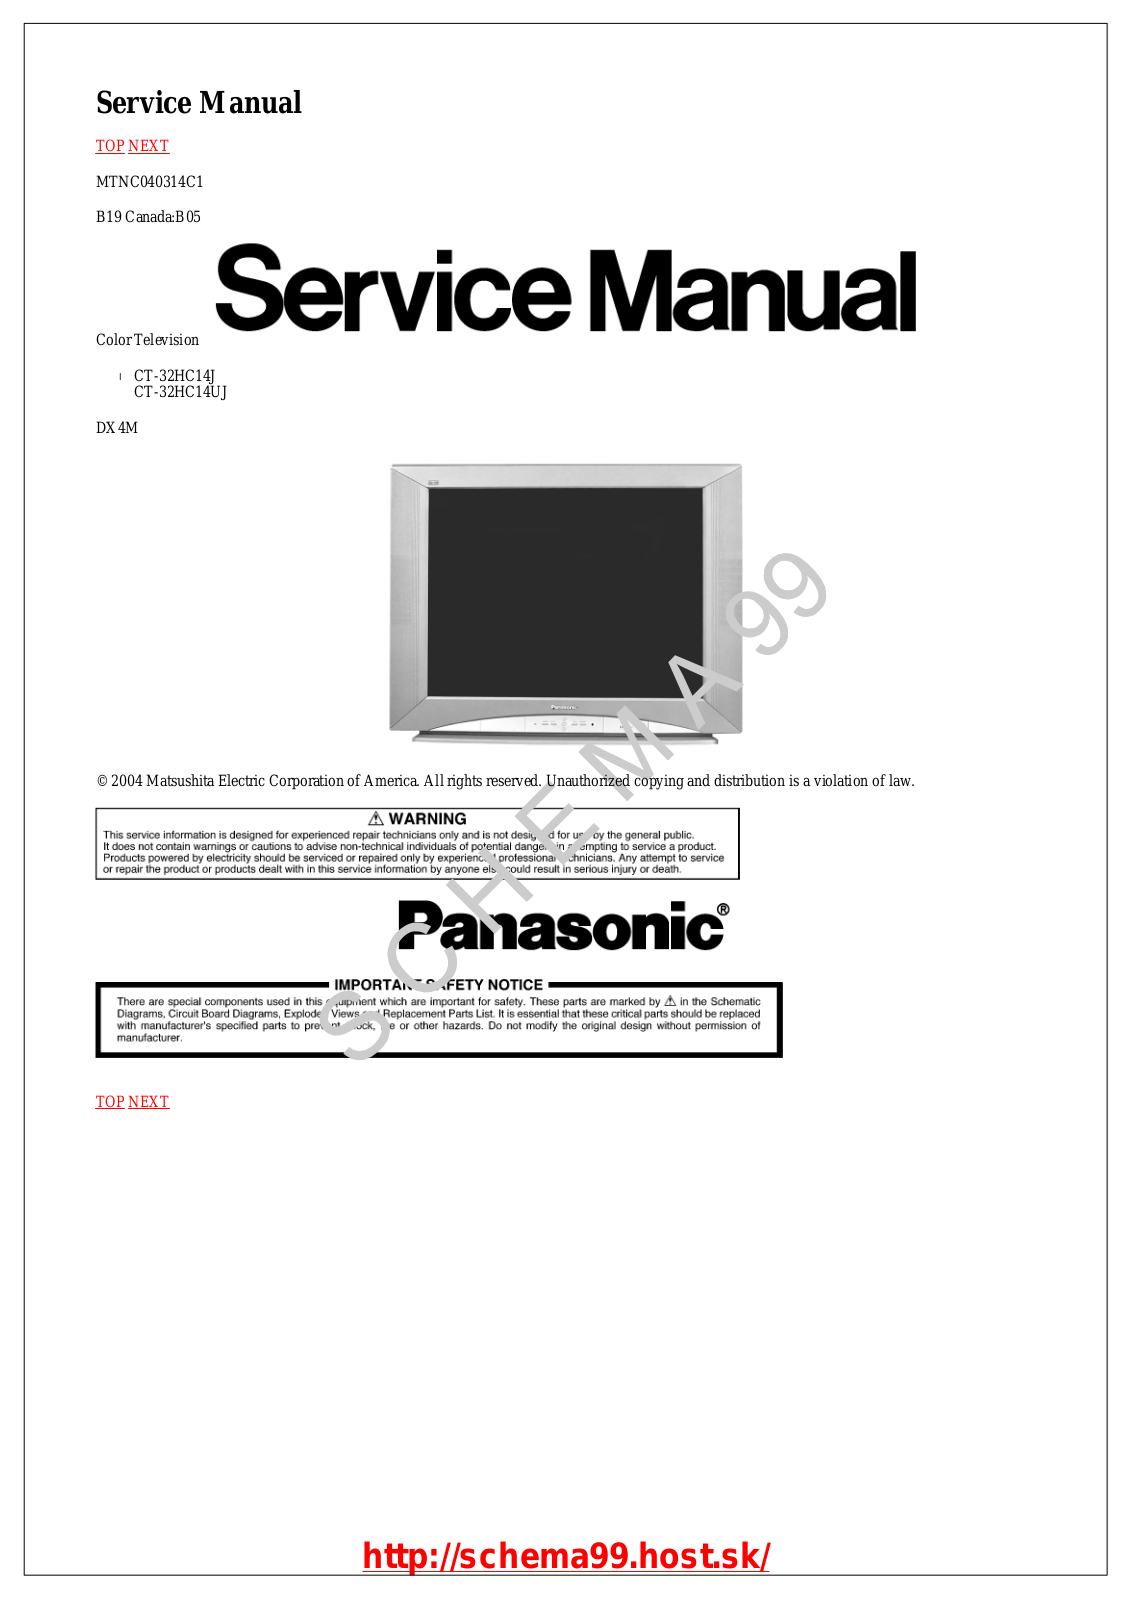 Panasonic CT-32HC14J /UJ Schematic